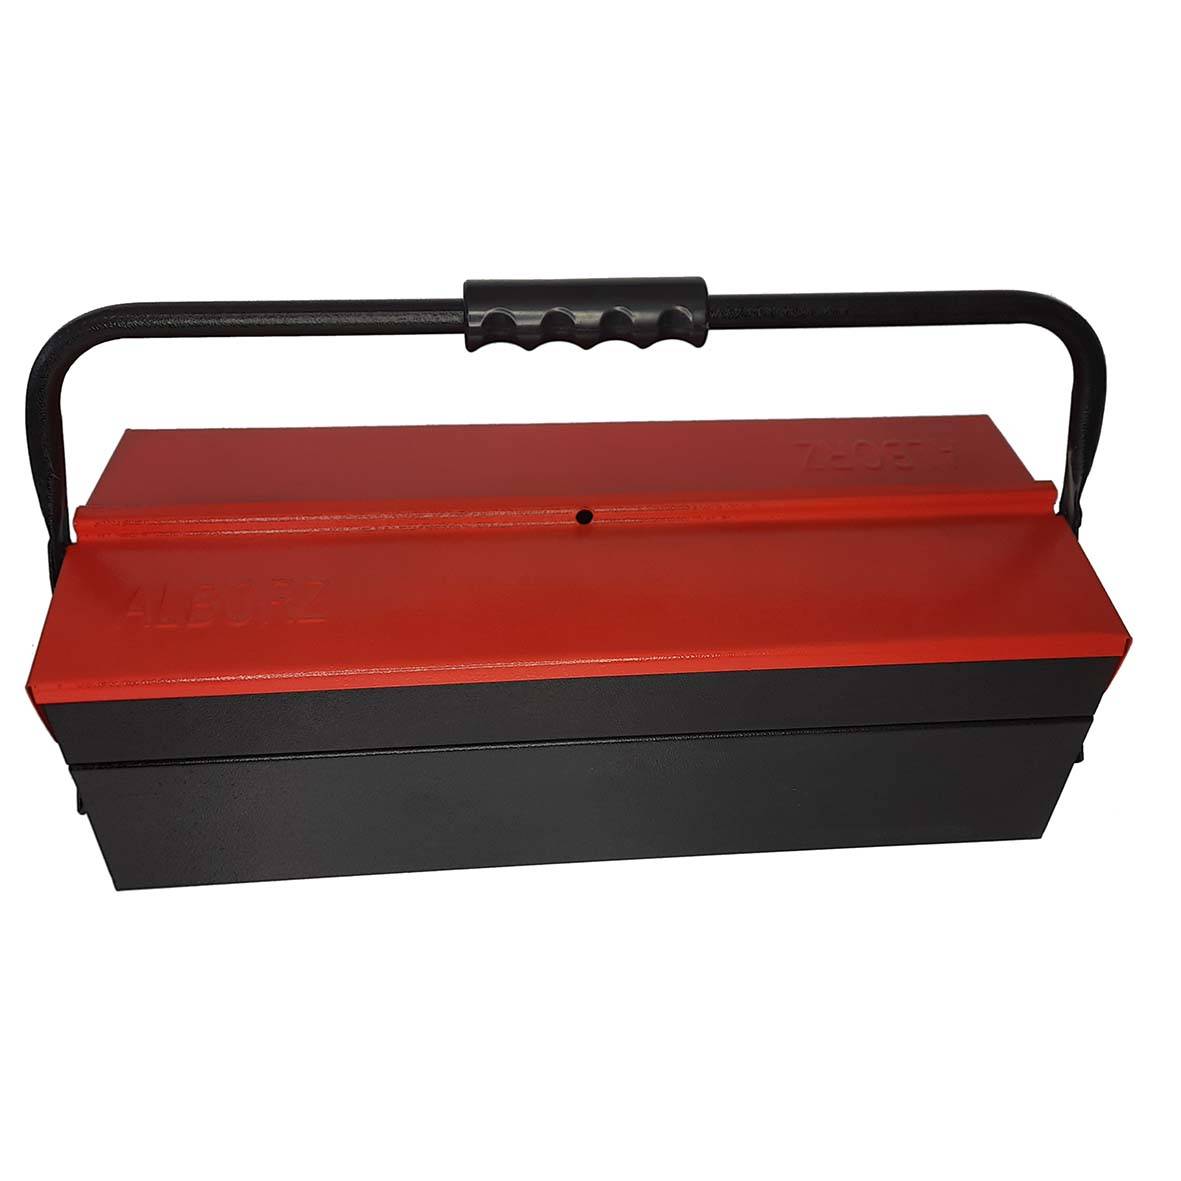 جعبه ابزارفلزی یک طبقه مرغوب با رنگ کوره ای و پرچ فولادی